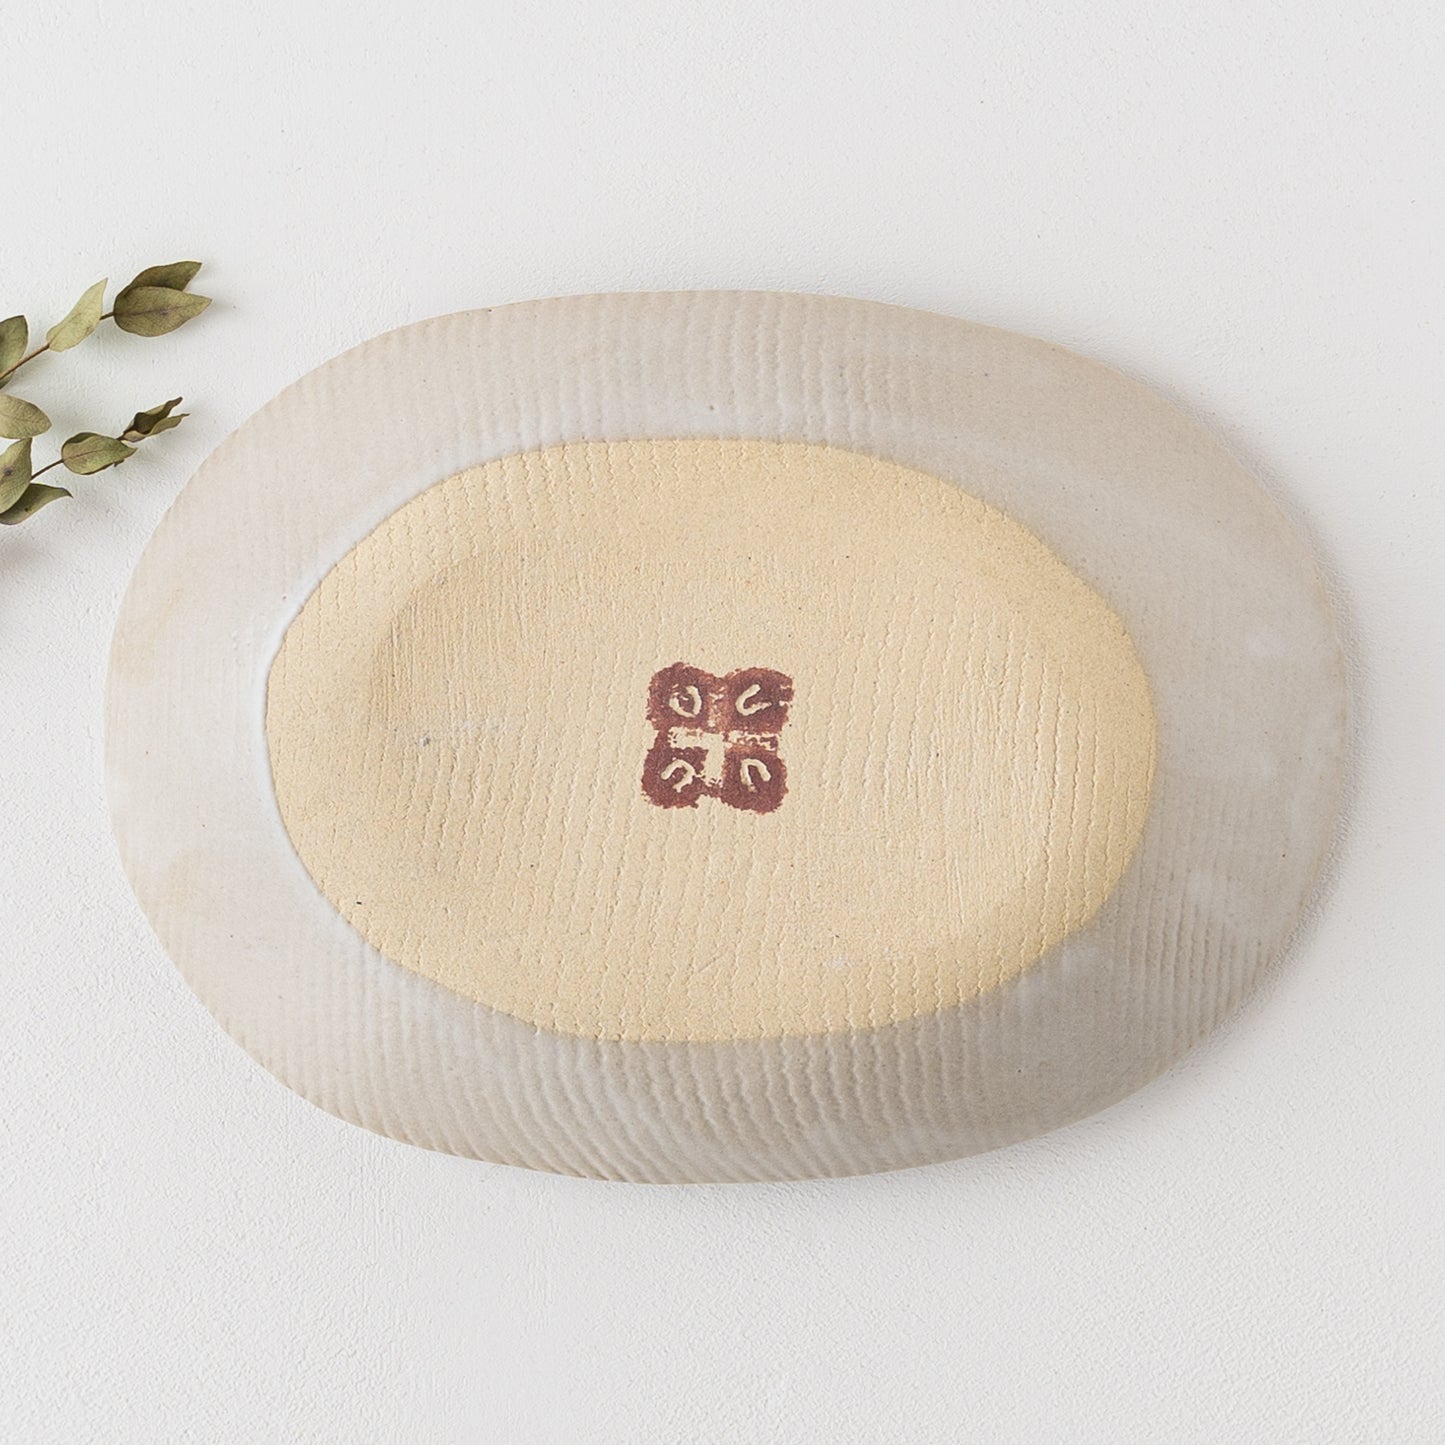 食卓を素敵に彩ってくれる松崎麗さんの楕円皿